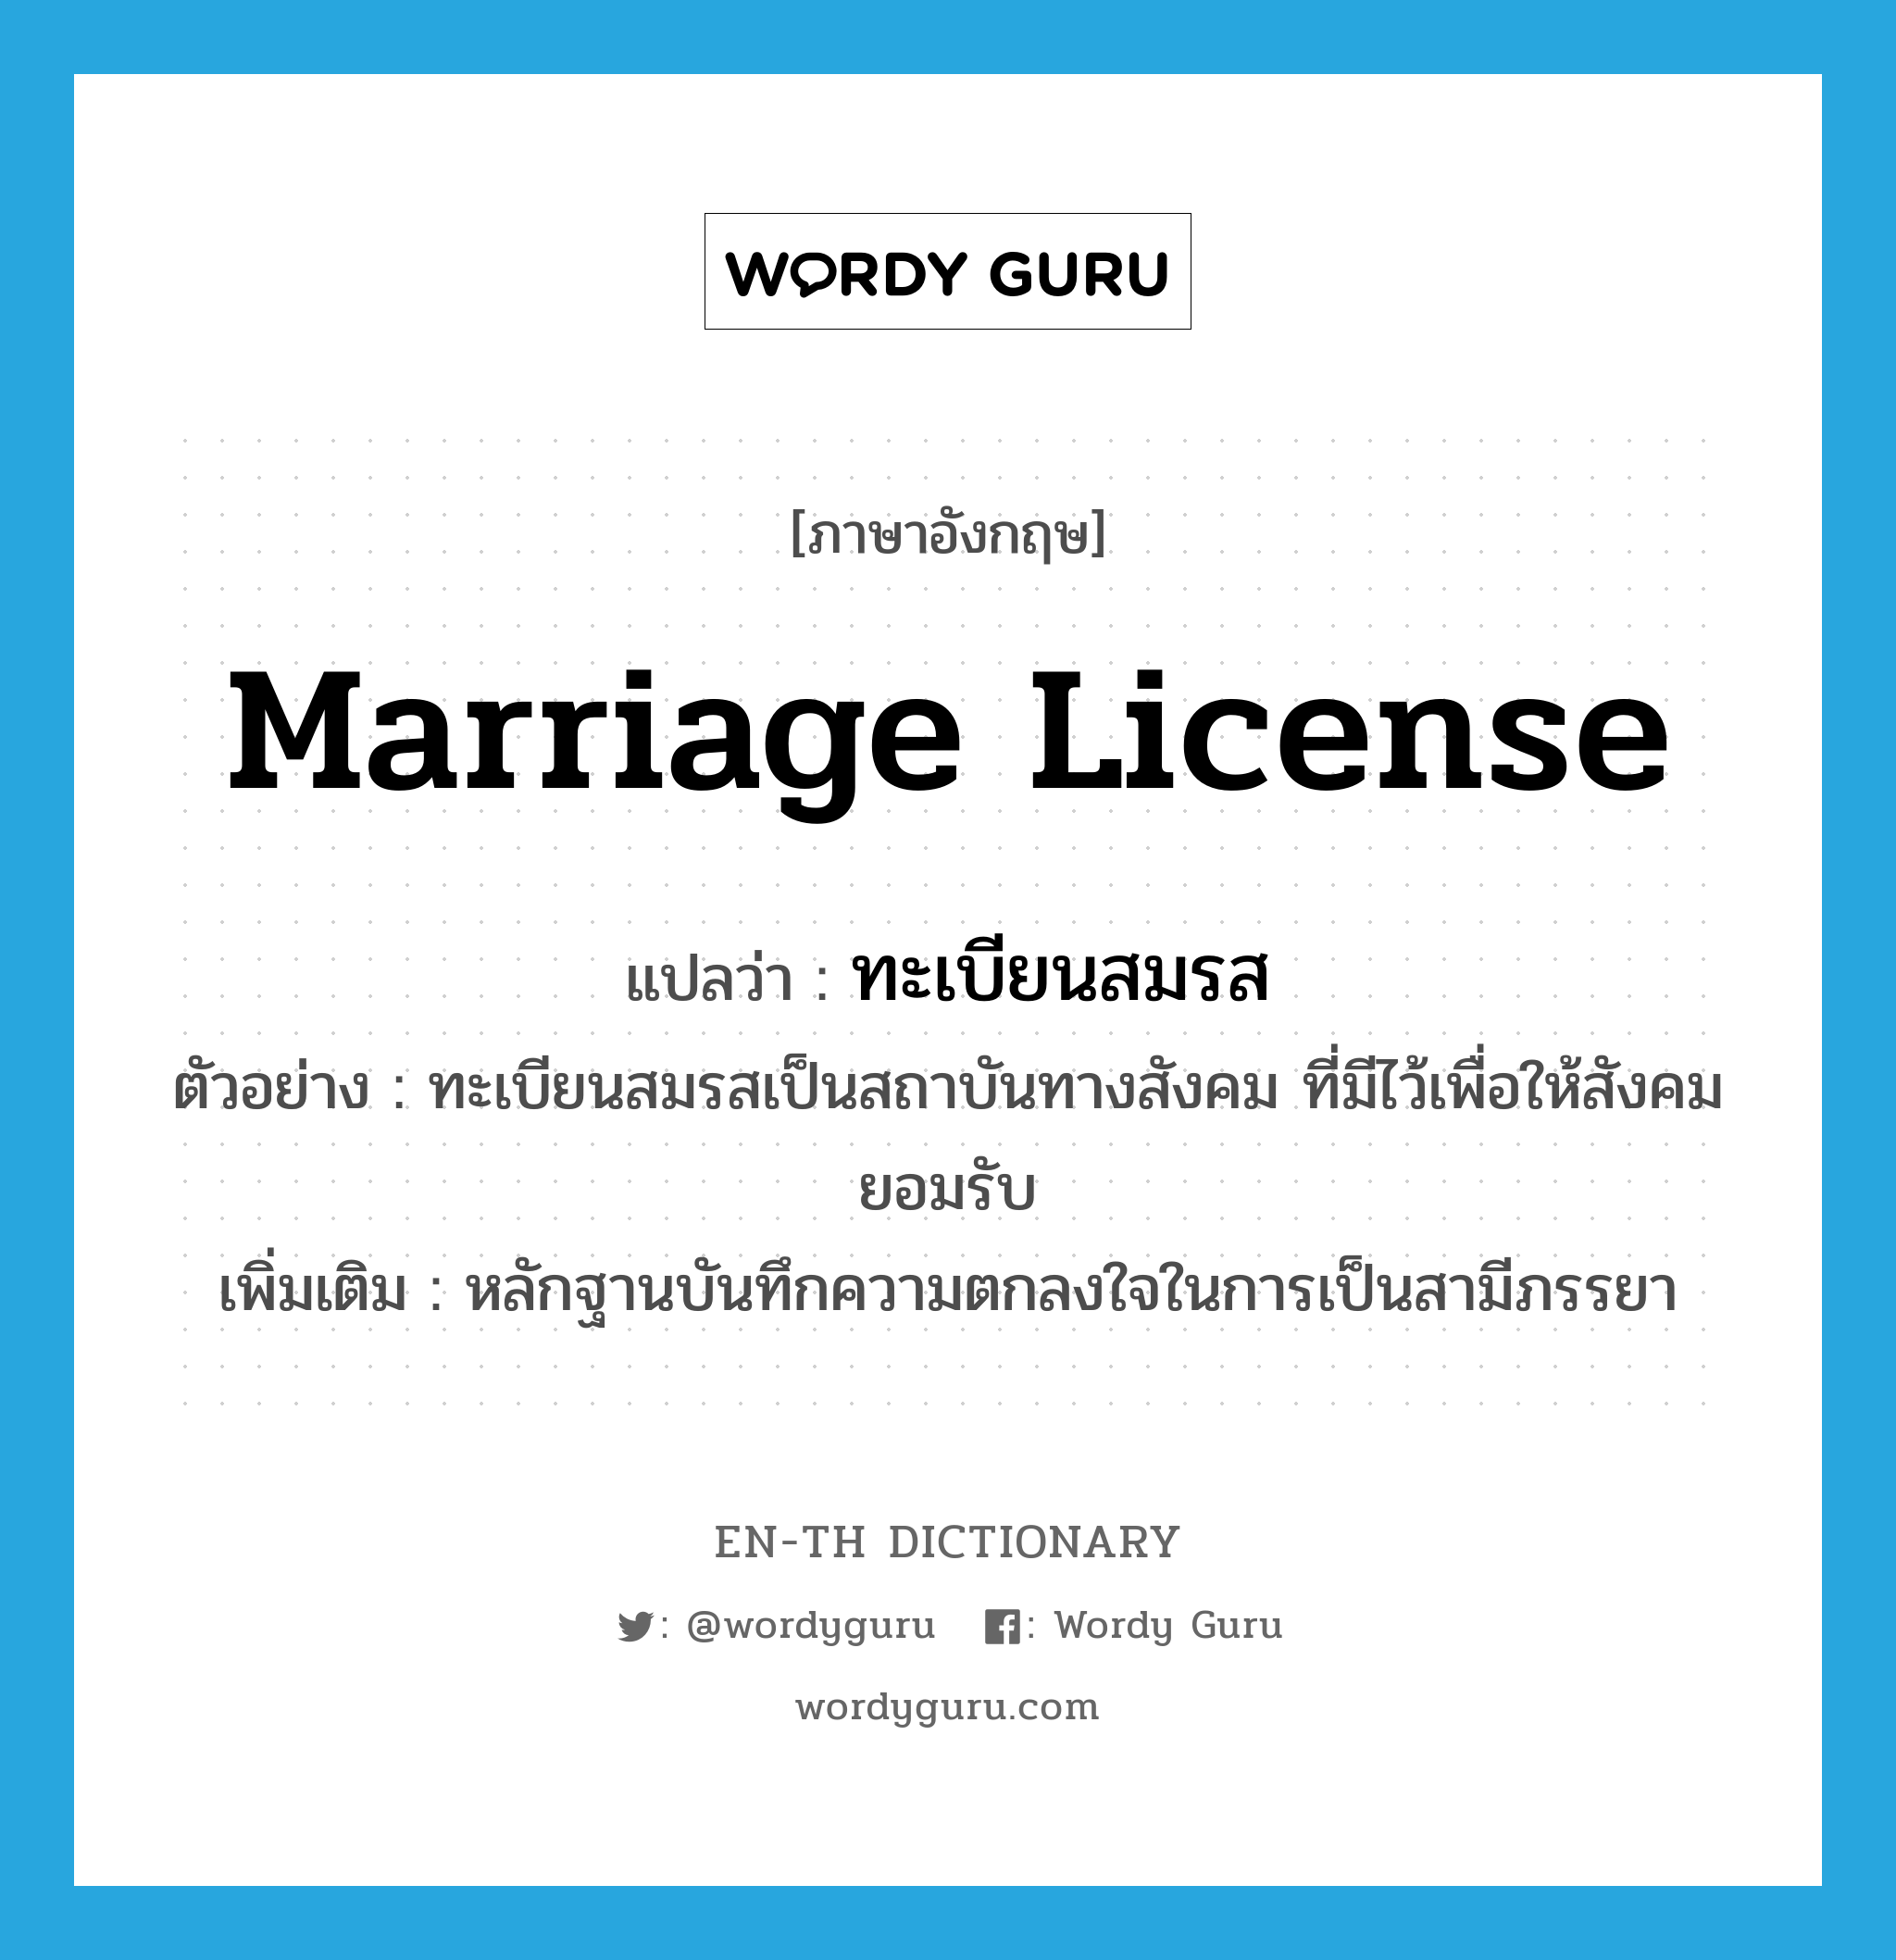 marriage license แปลว่า?, คำศัพท์ภาษาอังกฤษ marriage license แปลว่า ทะเบียนสมรส ประเภท N ตัวอย่าง ทะเบียนสมรสเป็นสถาบันทางสังคม ที่มีไว้เพื่อให้สังคมยอมรับ เพิ่มเติม หลักฐานบันทึกความตกลงใจในการเป็นสามีภรรยา หมวด N